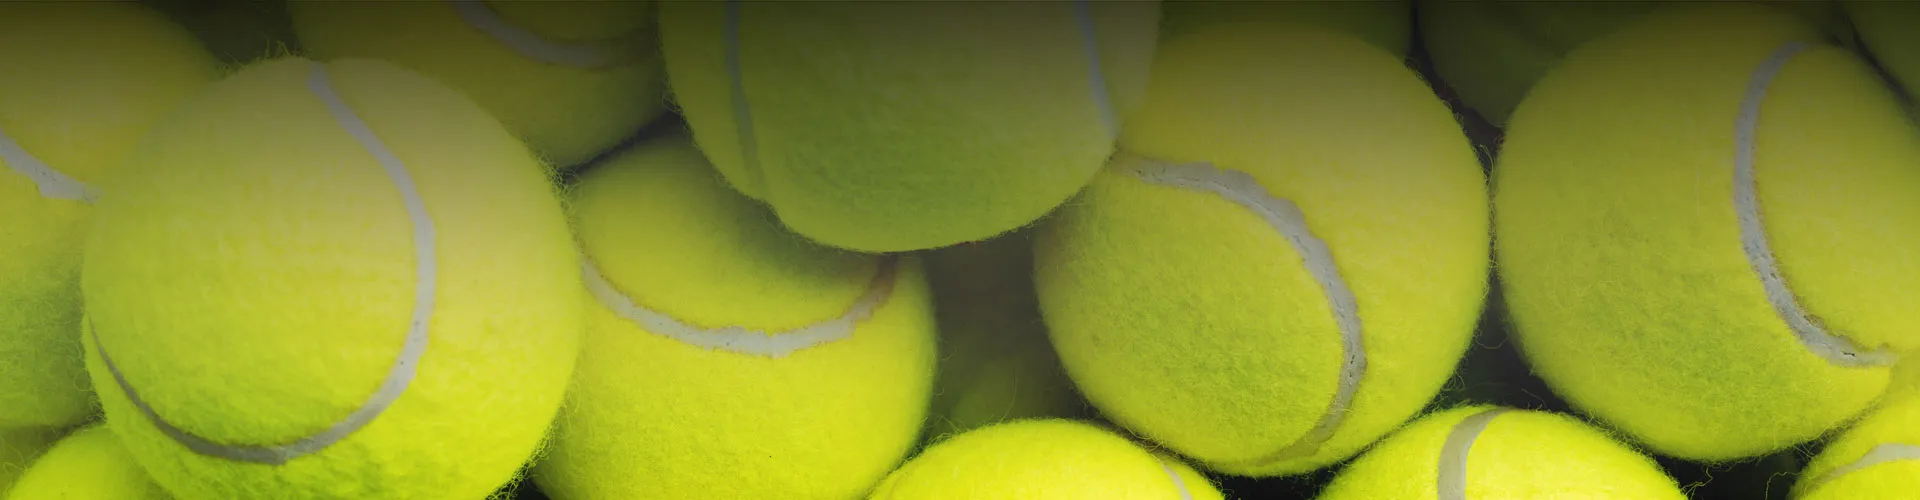 Pile of Tennis Balls